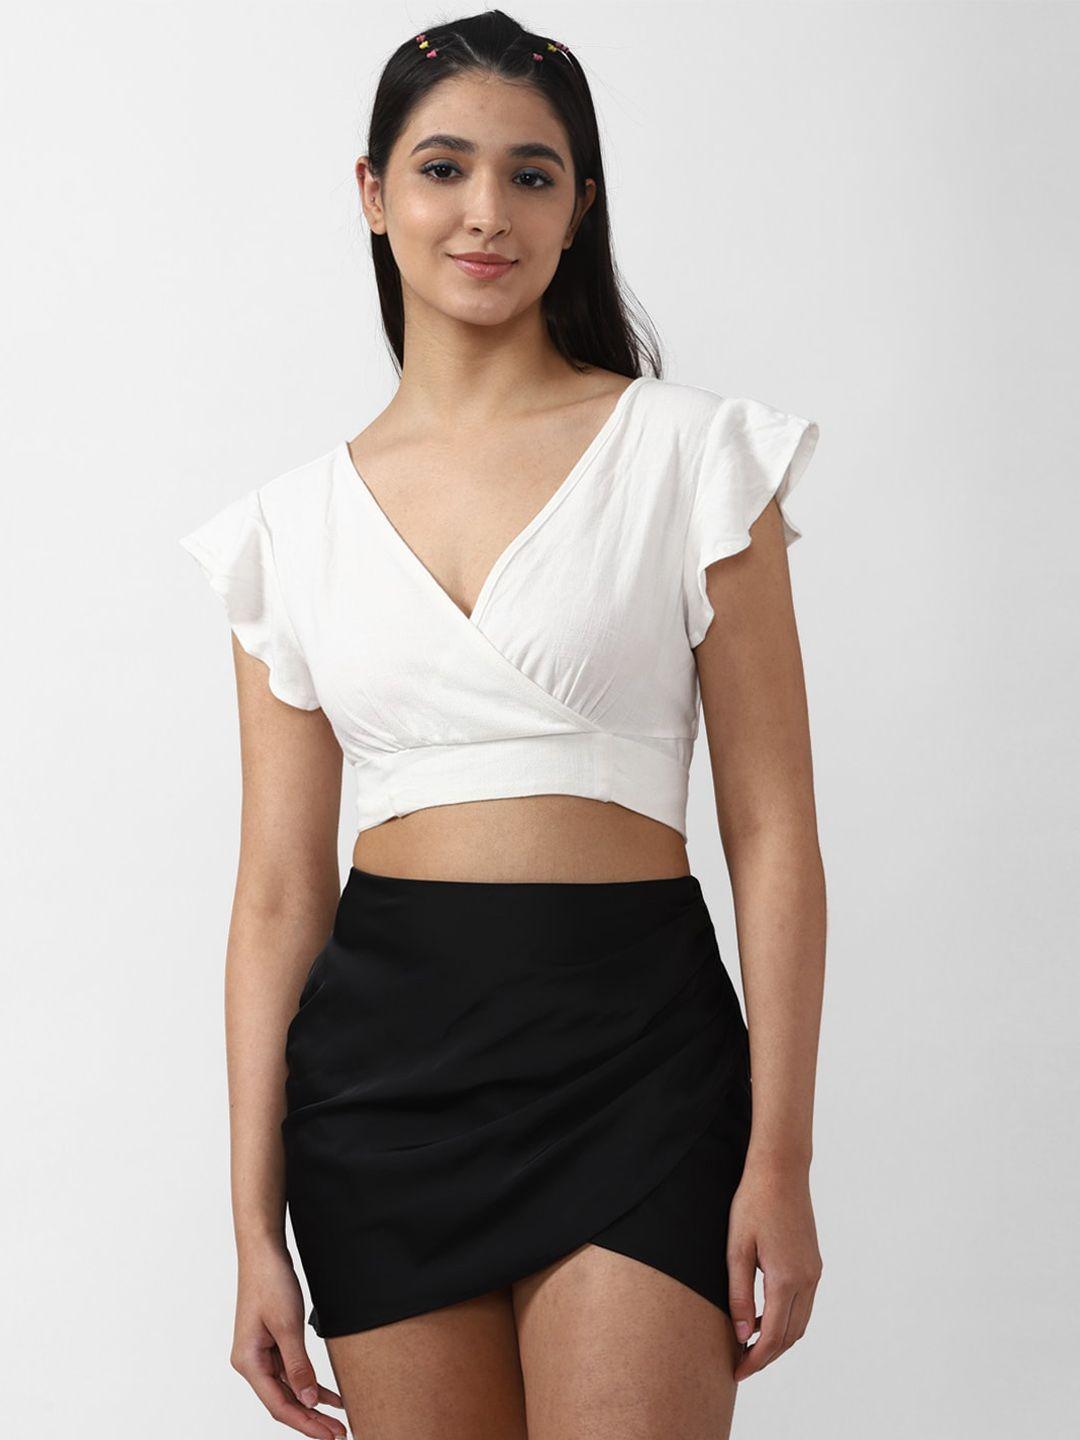 forever 21 women white & black top with skirt